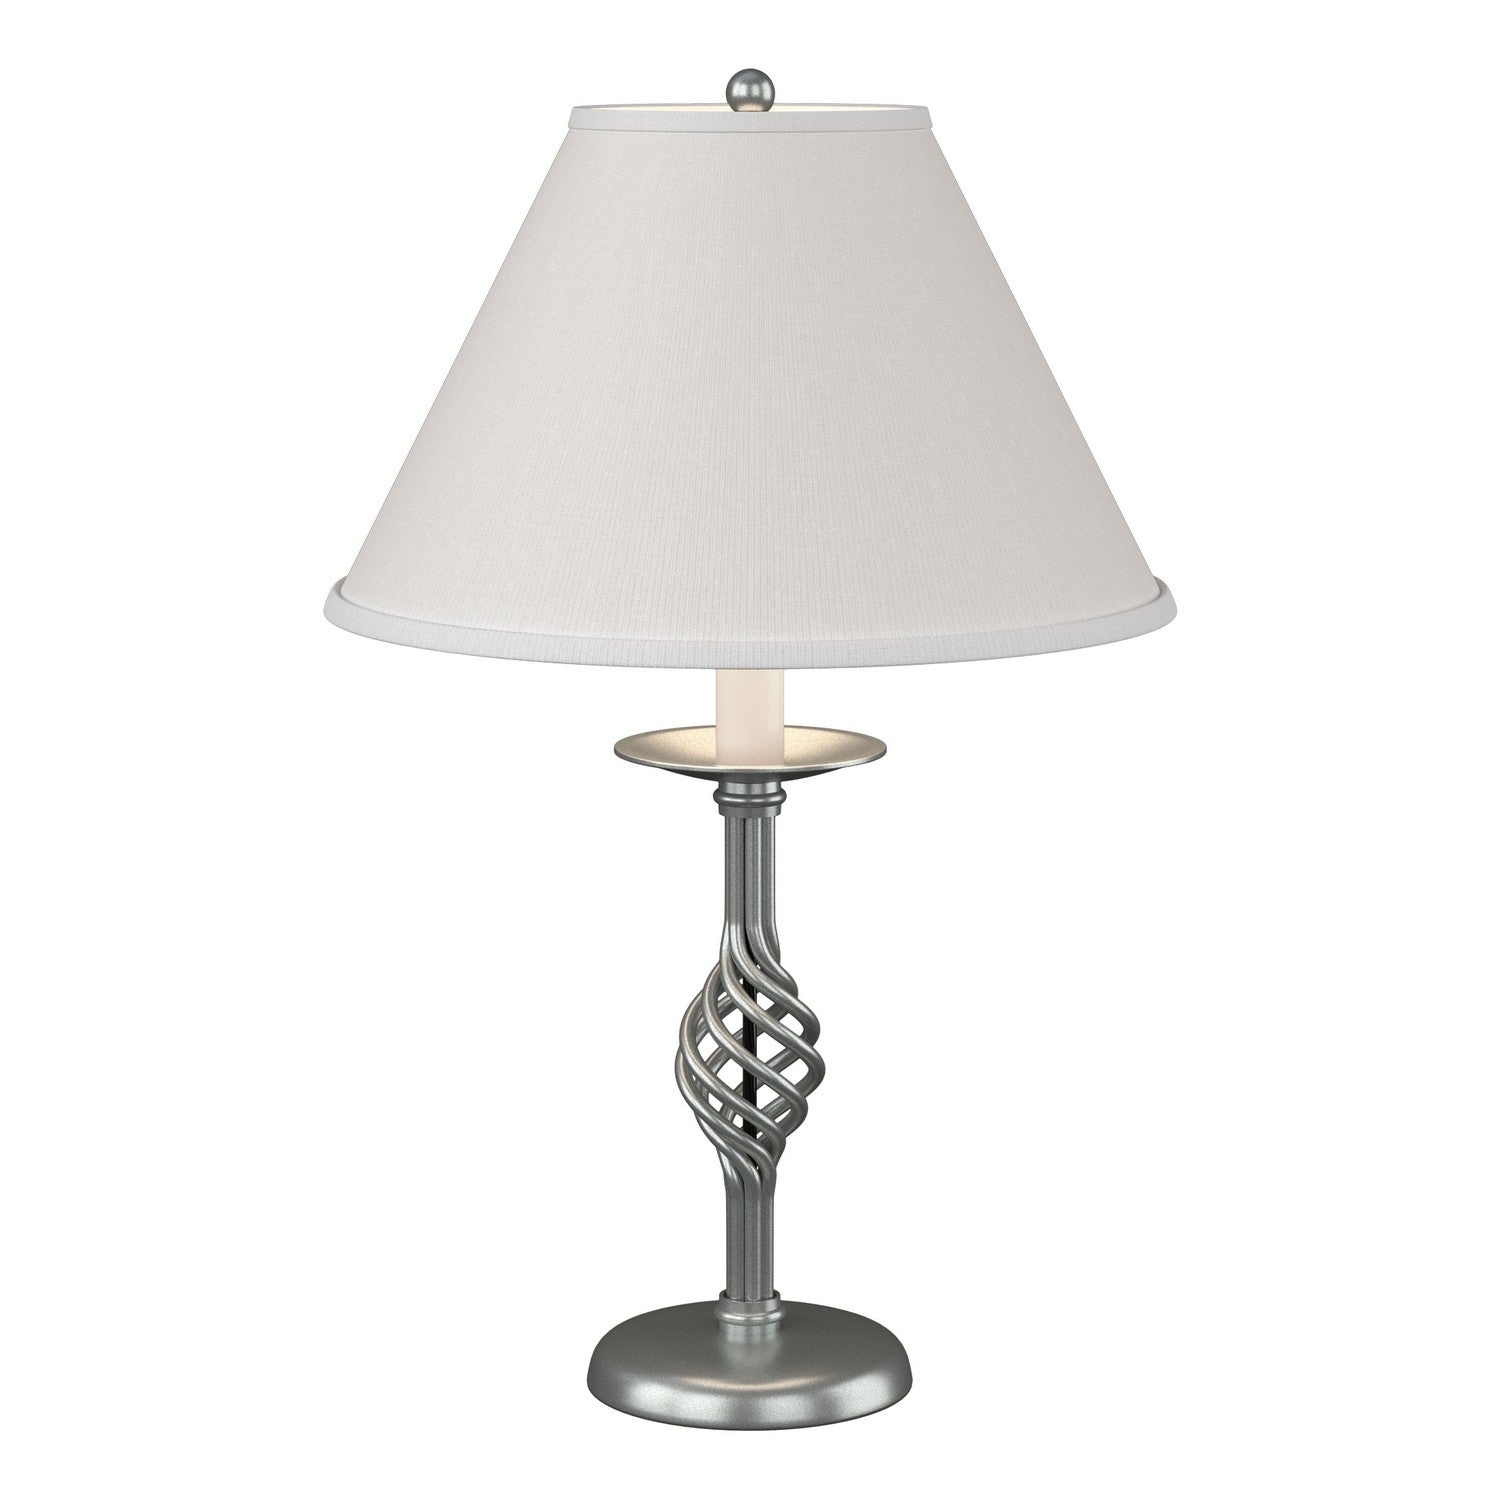 Hubbardton Forge - One Light Table Lamp - Twist Basket - Vintage Platinum- Union Lighting Luminaires Decor